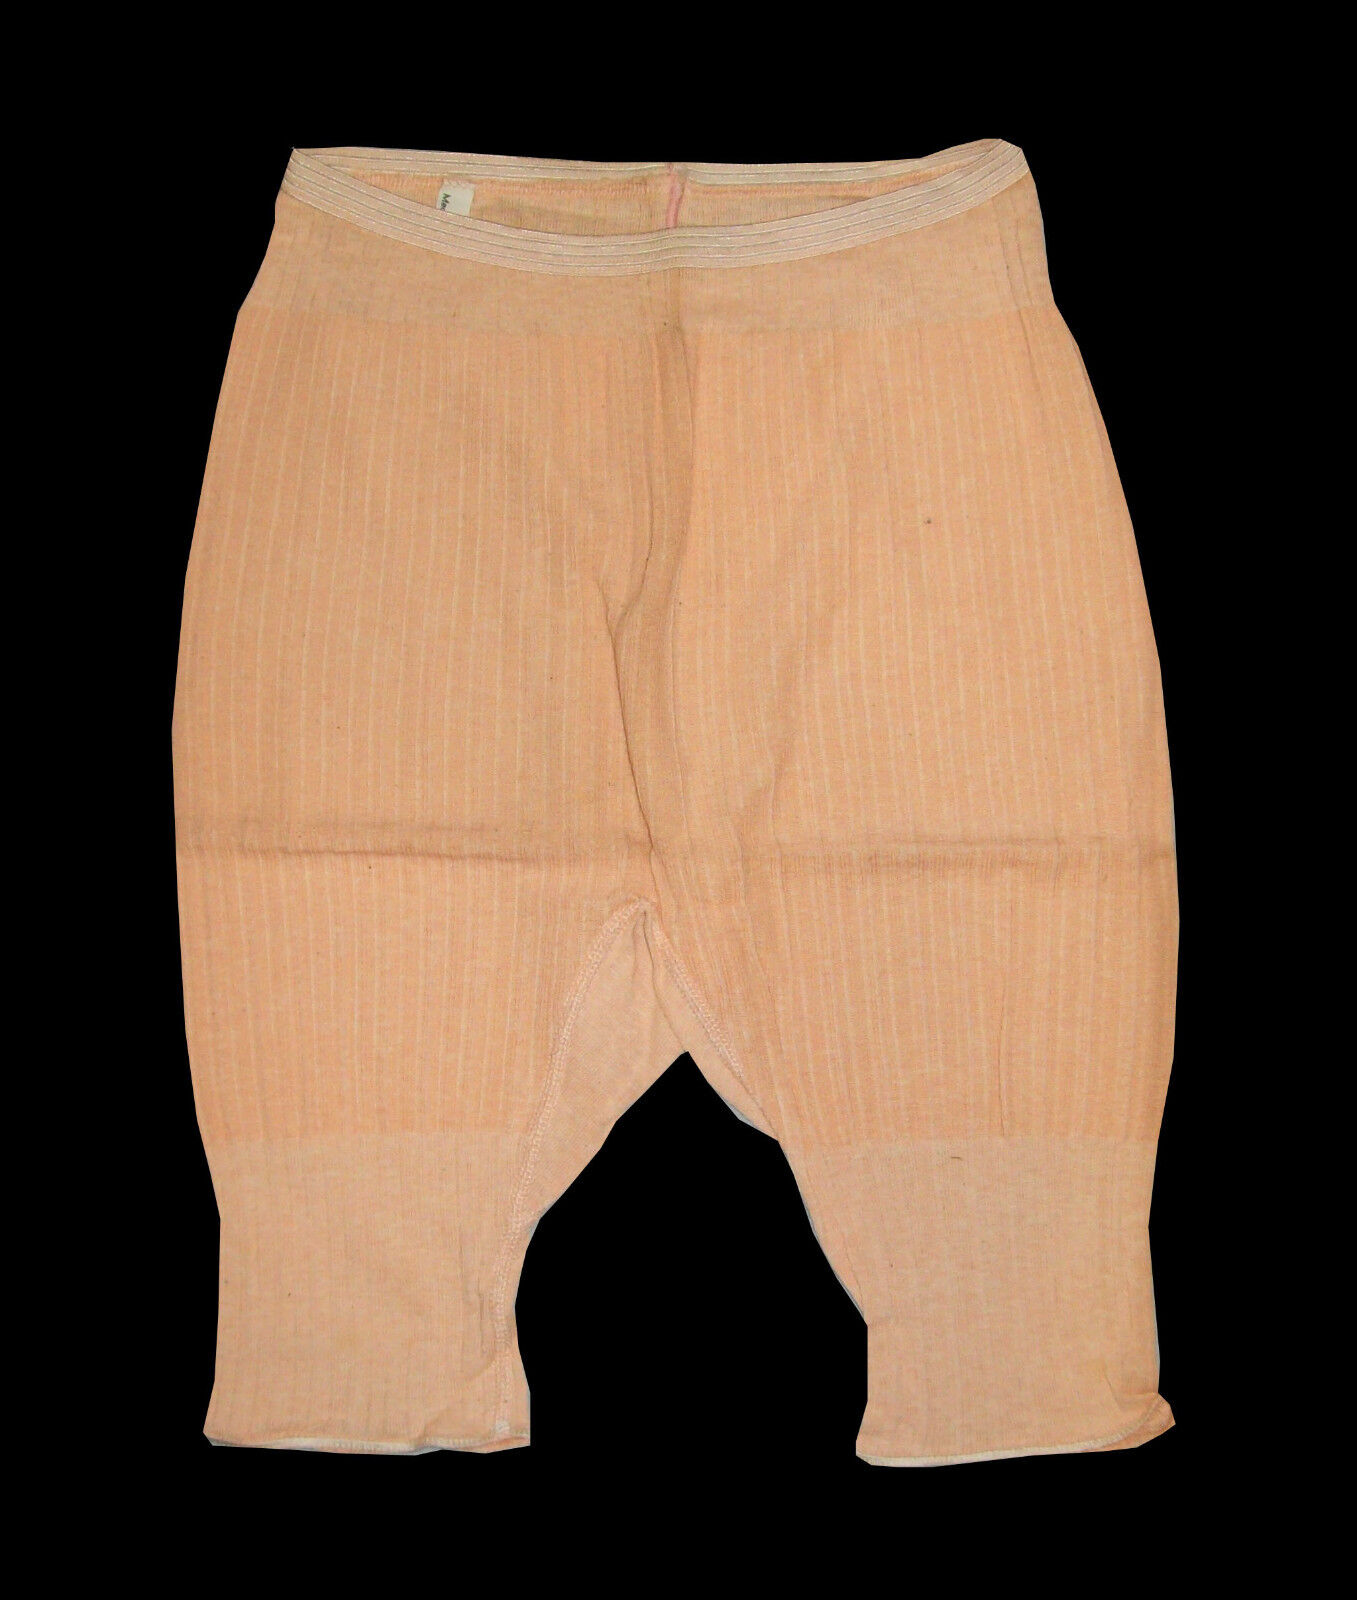 Old Antique Vtg 1920s Deadstock Pair Ladies Pants Panties Medium Stretchy Unworn